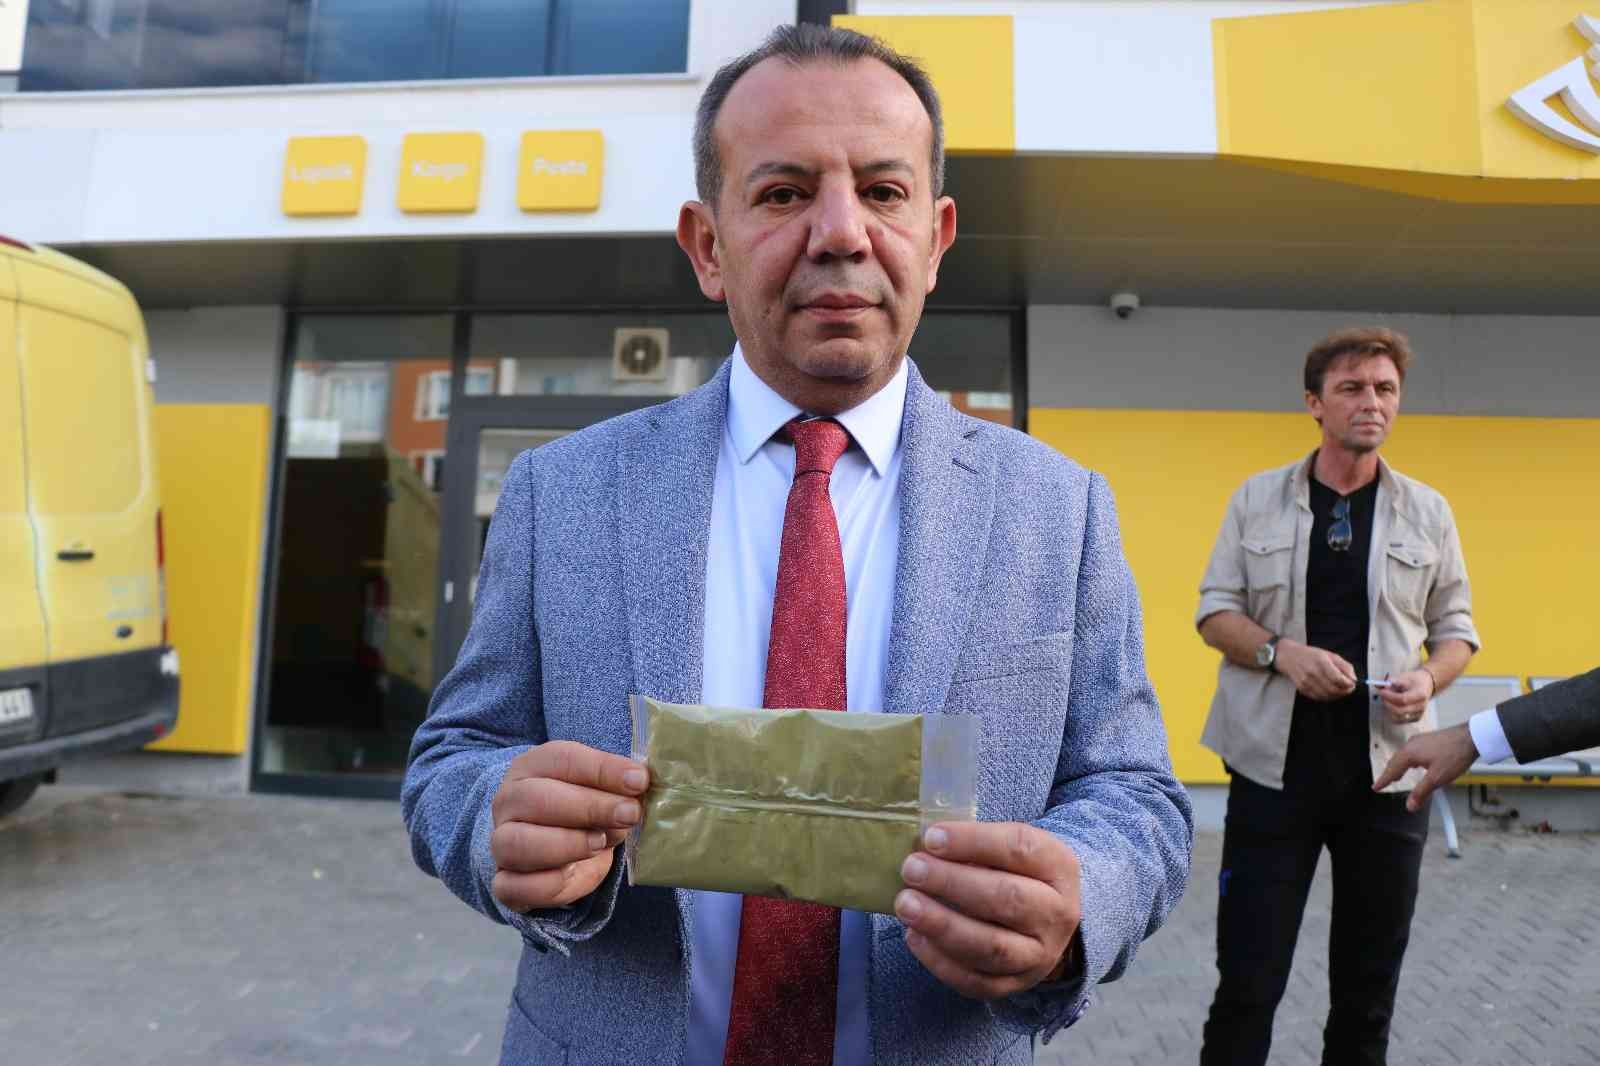 Bolu Belediye Başkanı Özcan, HDP’ye kına gönderdi